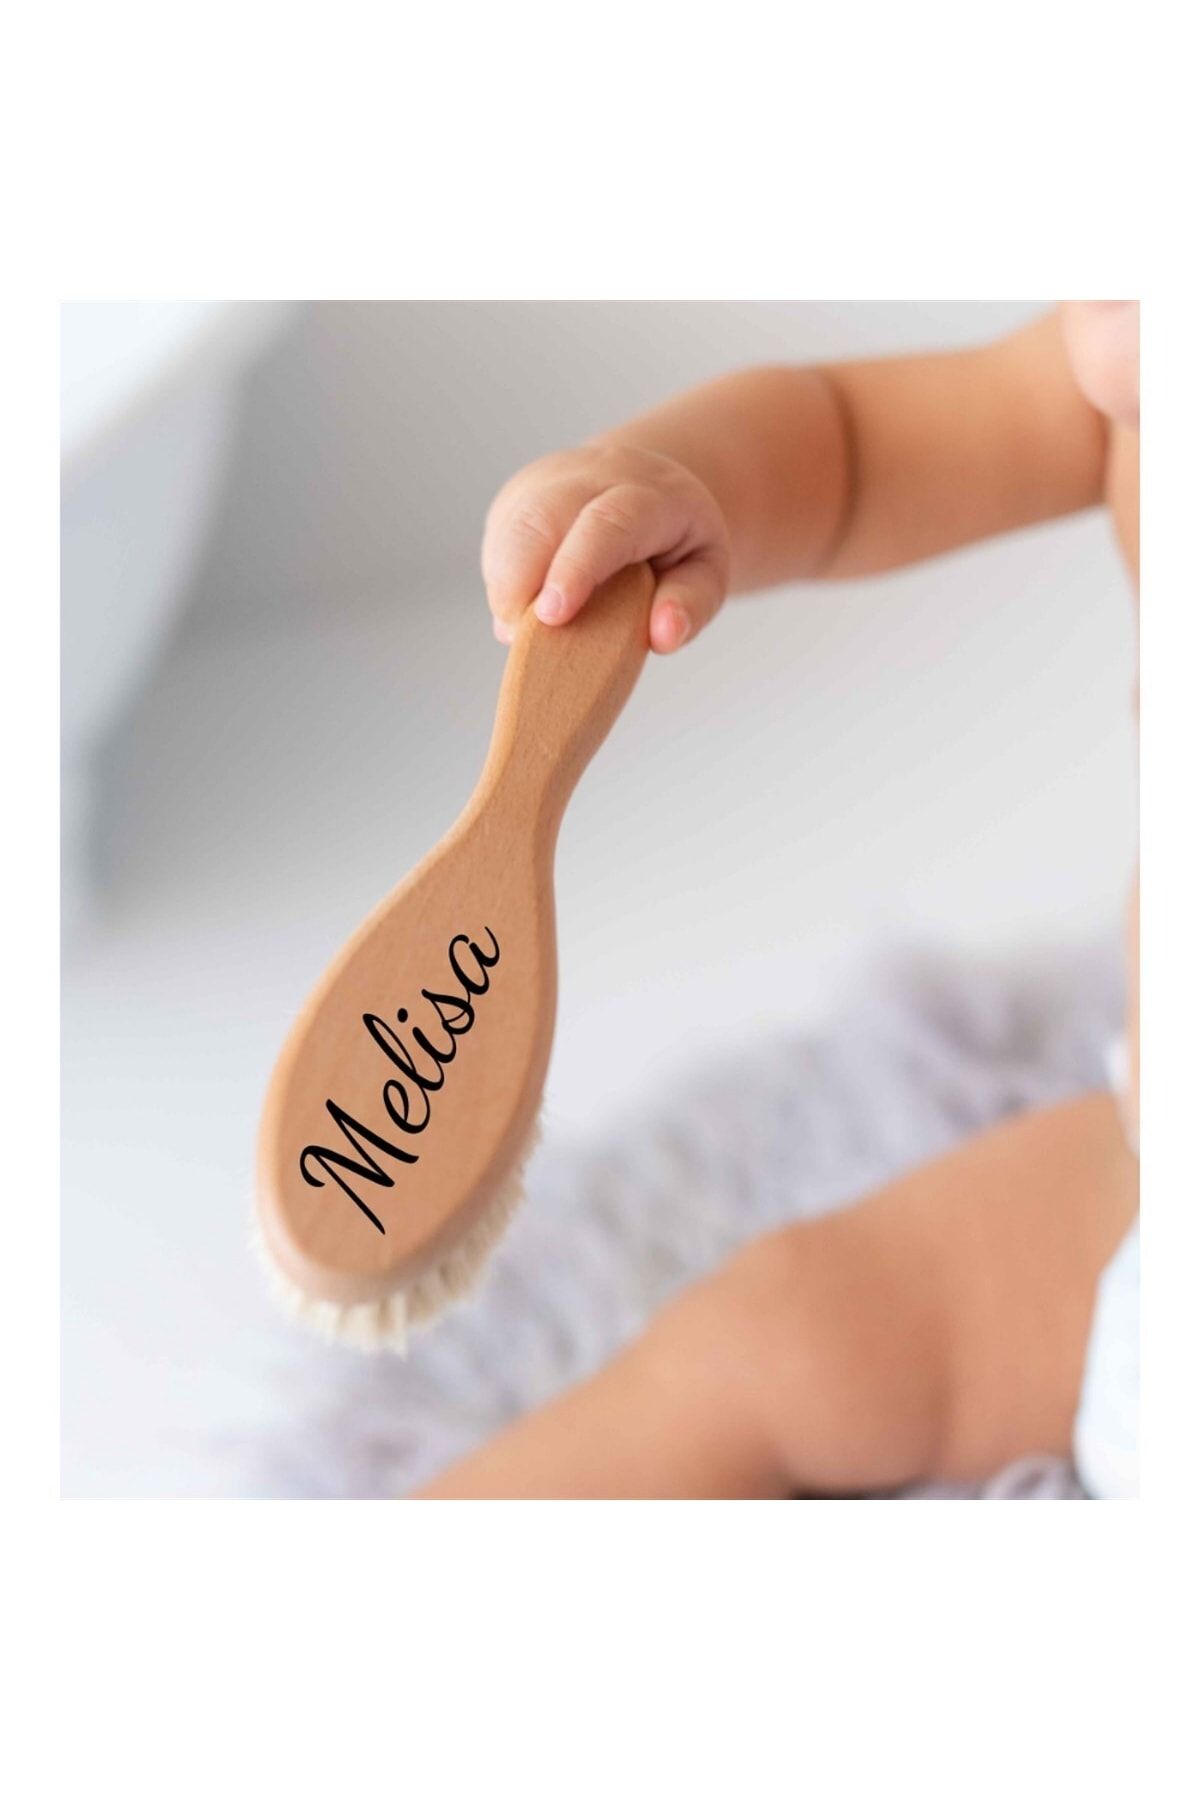 Mama Yoyo Baby Kids Isimli Doğal Keçi Kılı Bebek Saç Fırçası - Ekstra Yumuşak